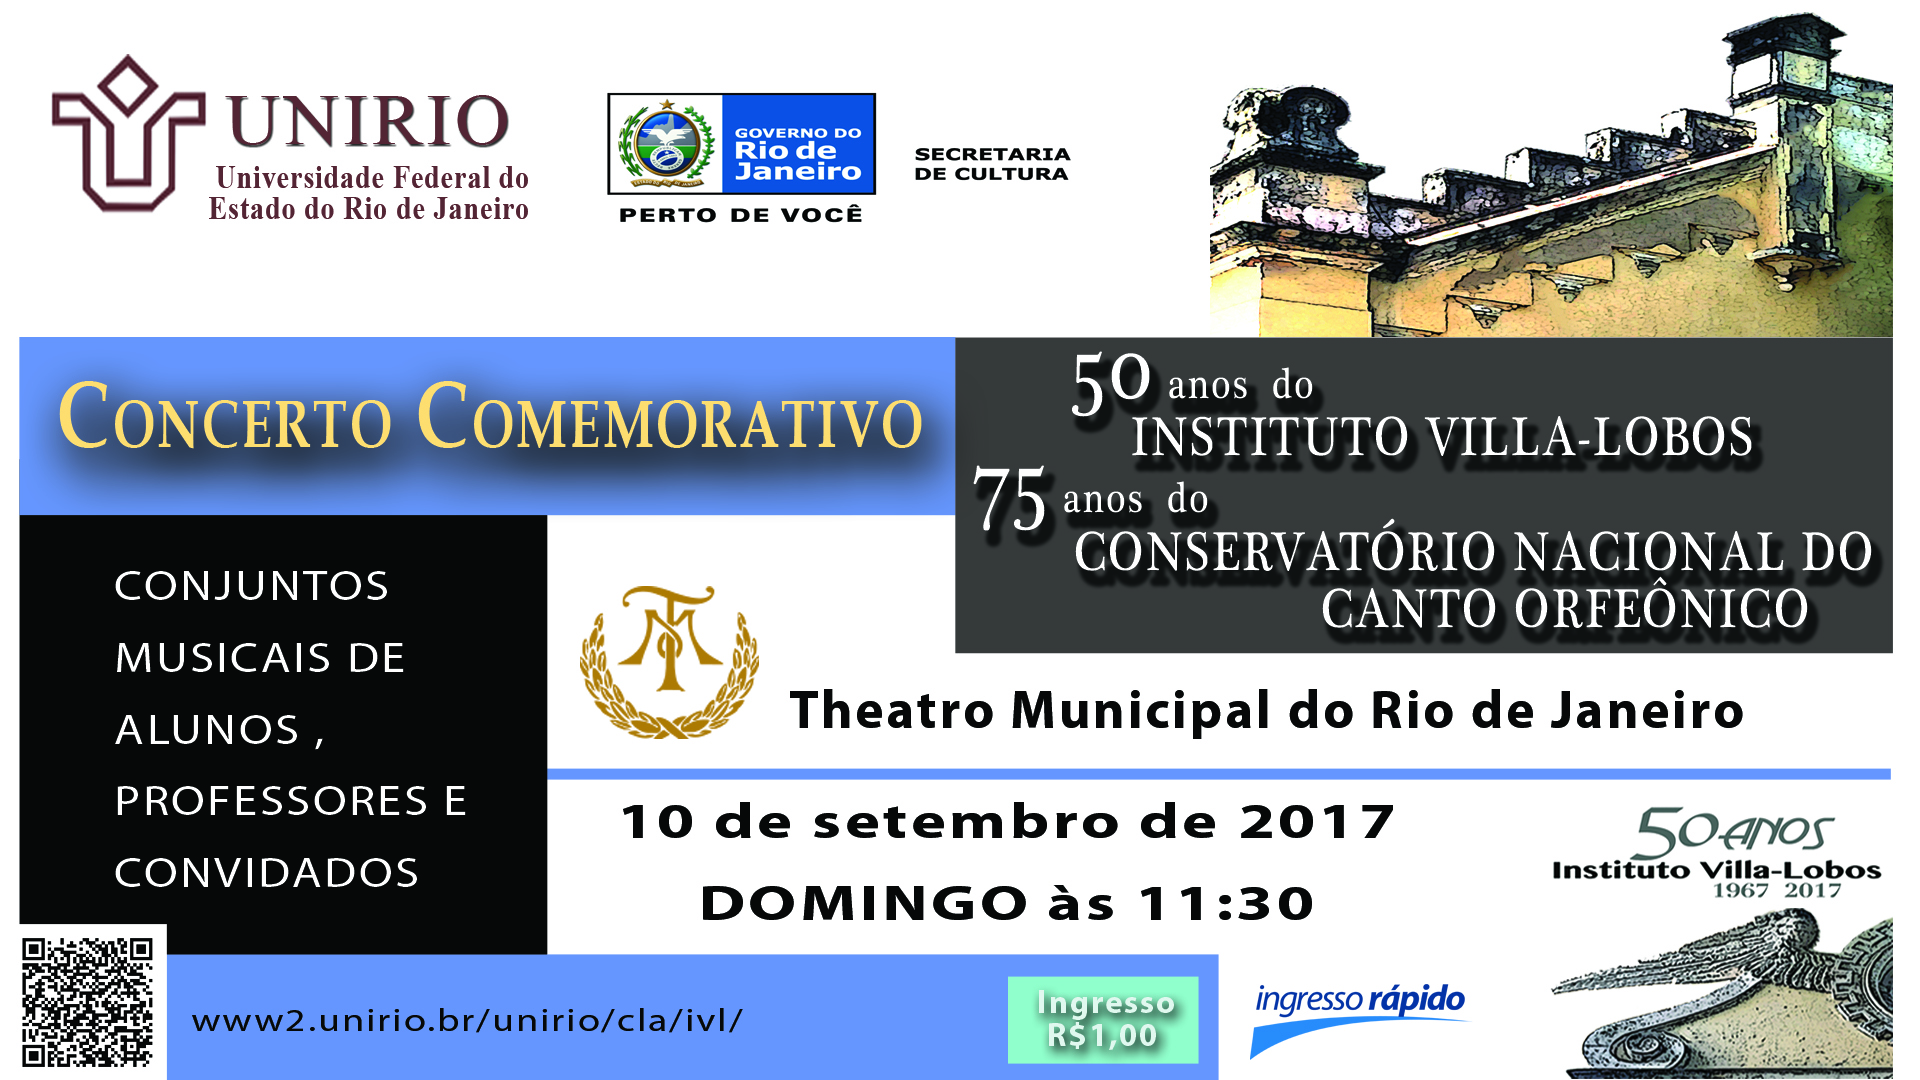 Concerto Comemorativo 50 anos do IVL no Theatro Municipal do Rio de Janeiro